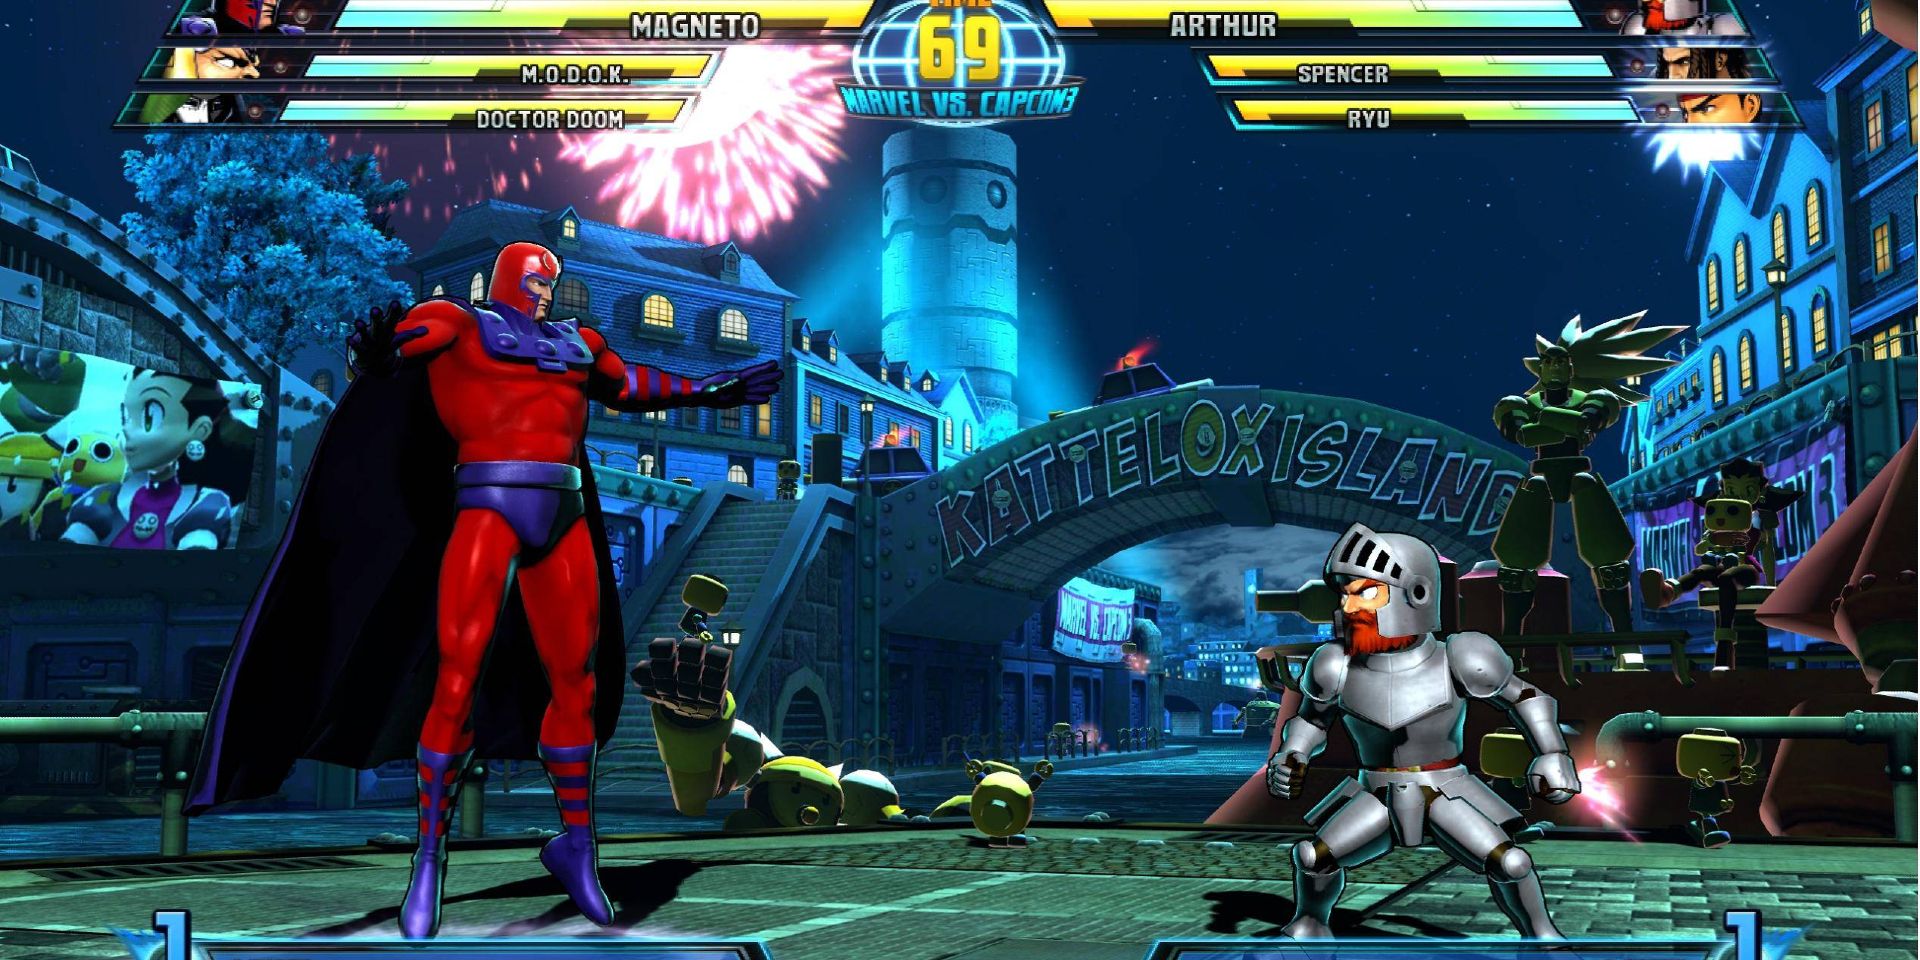 скриншот из marvel vs capcom 3, показывающий главного героя Ghost n Goblins.